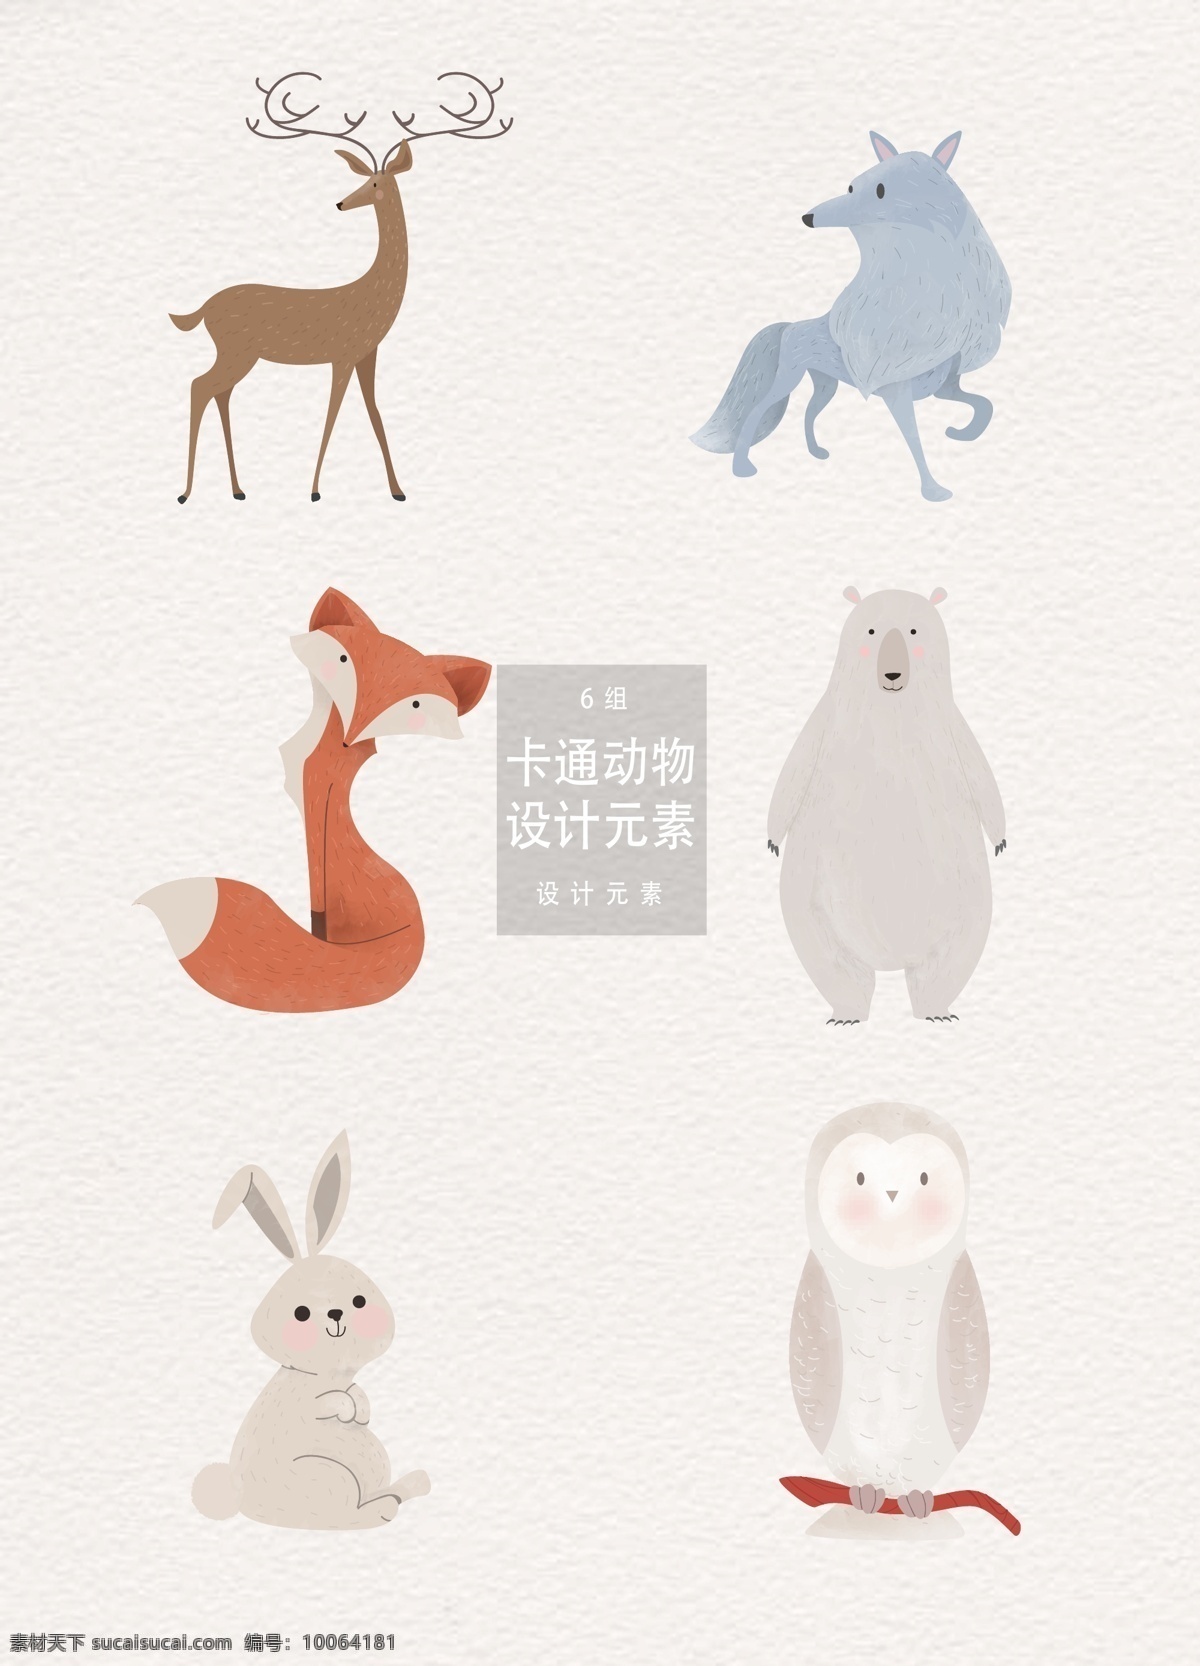 矢量 卡通 森林 动物 元素 设计元素 卡通动物 兔子 猫头鹰 麋鹿 狼 白狼 狐狸 北极熊